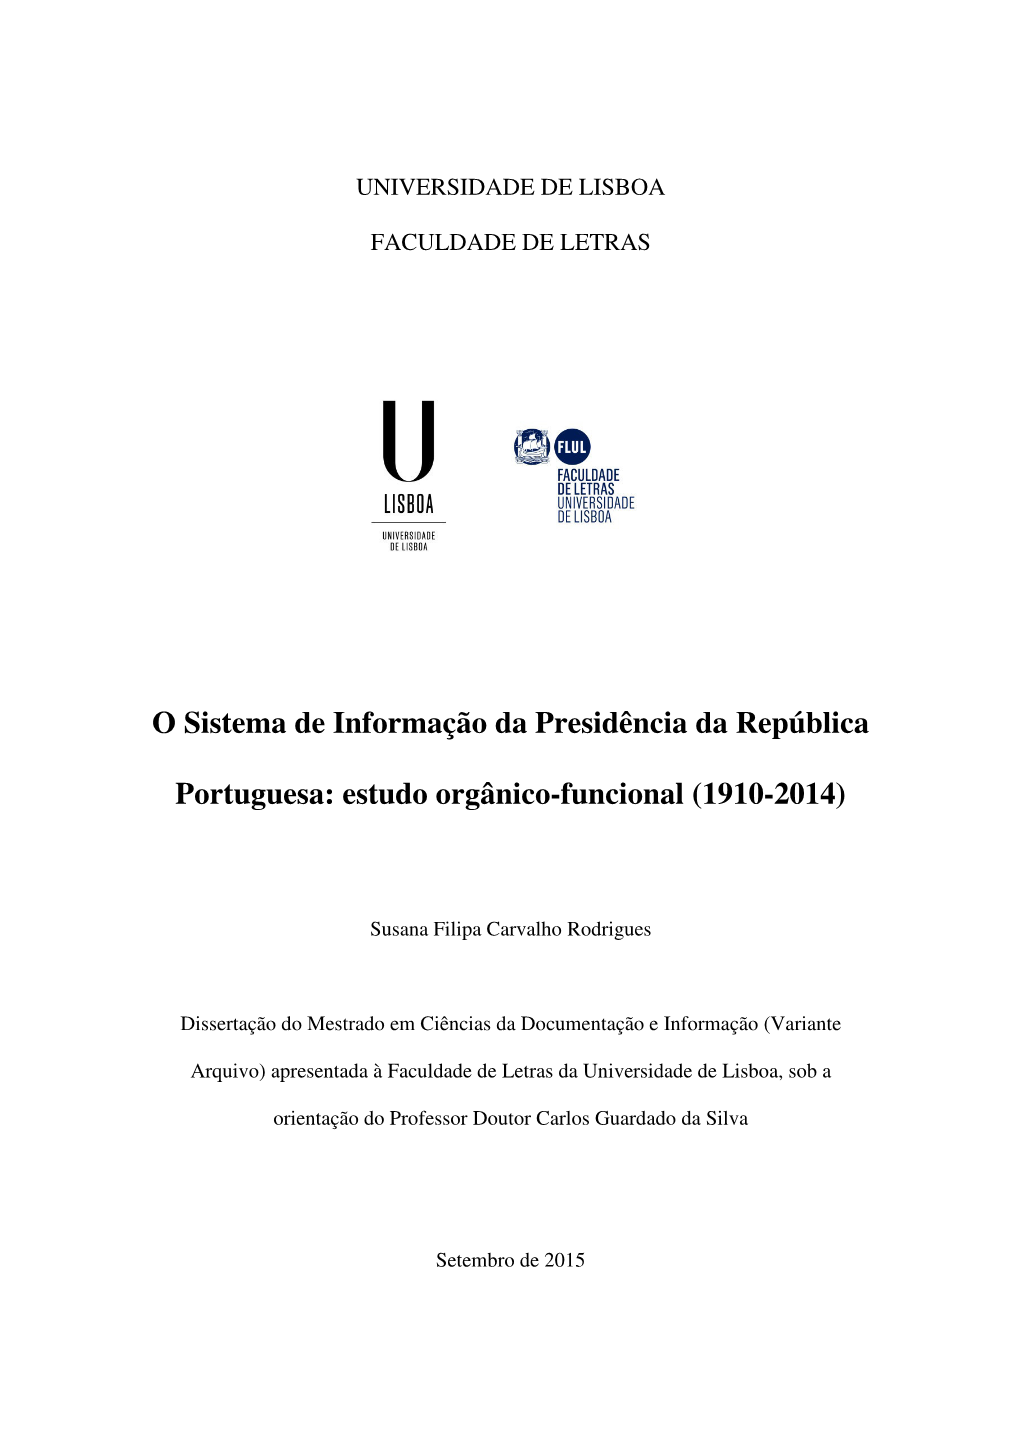 O Sistema De Informação Da Presidência Da República Portuguesa